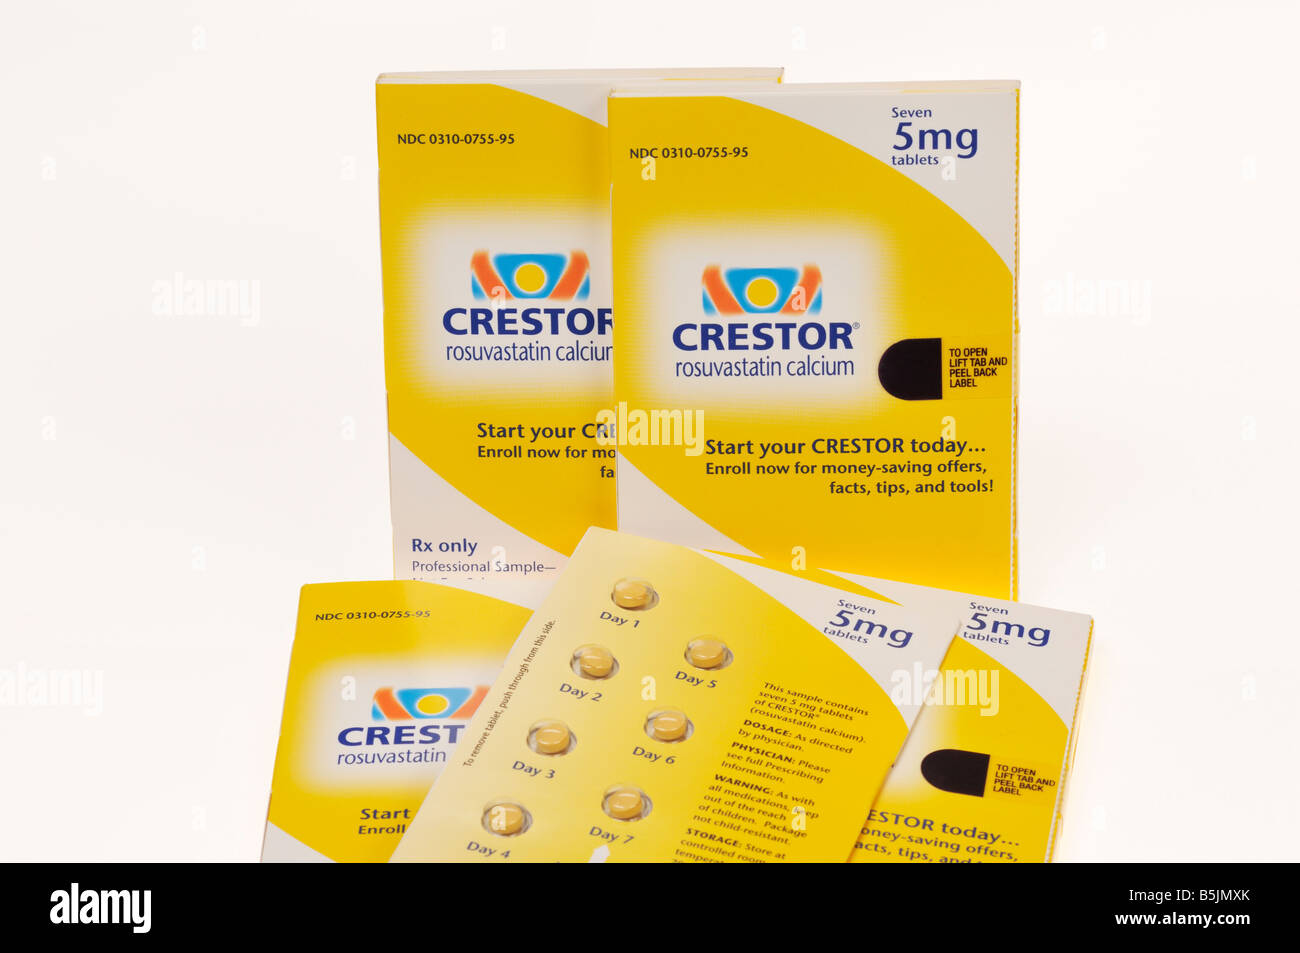 Crestor cholesetrol lowering statin prescription drug on white background. Stock Photo